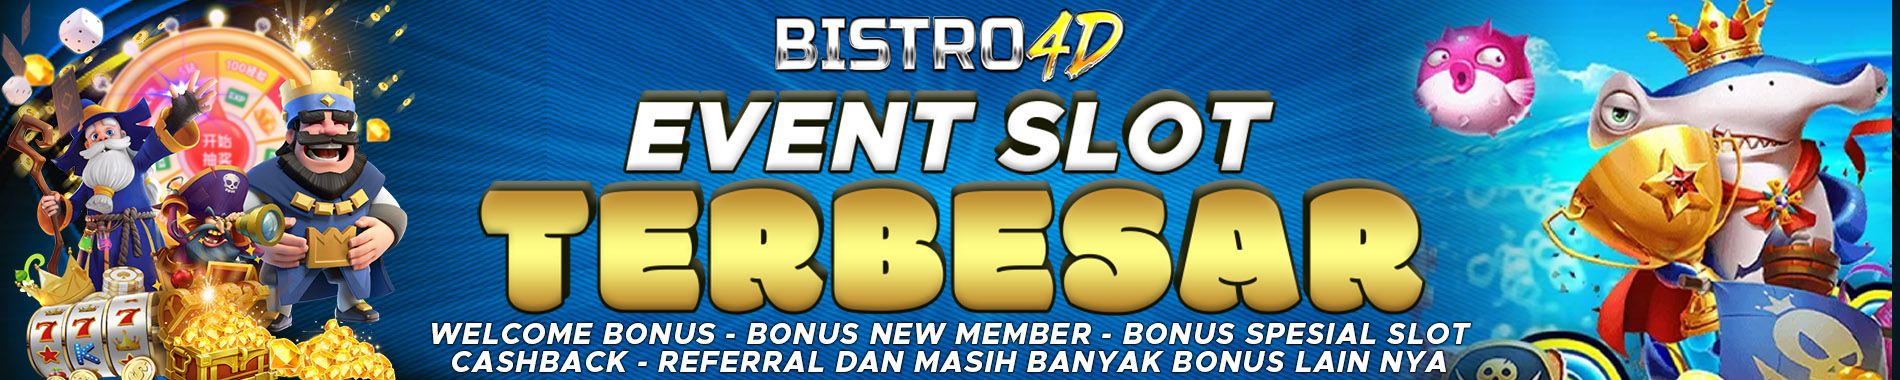 Event slot terbesar Bistro4D